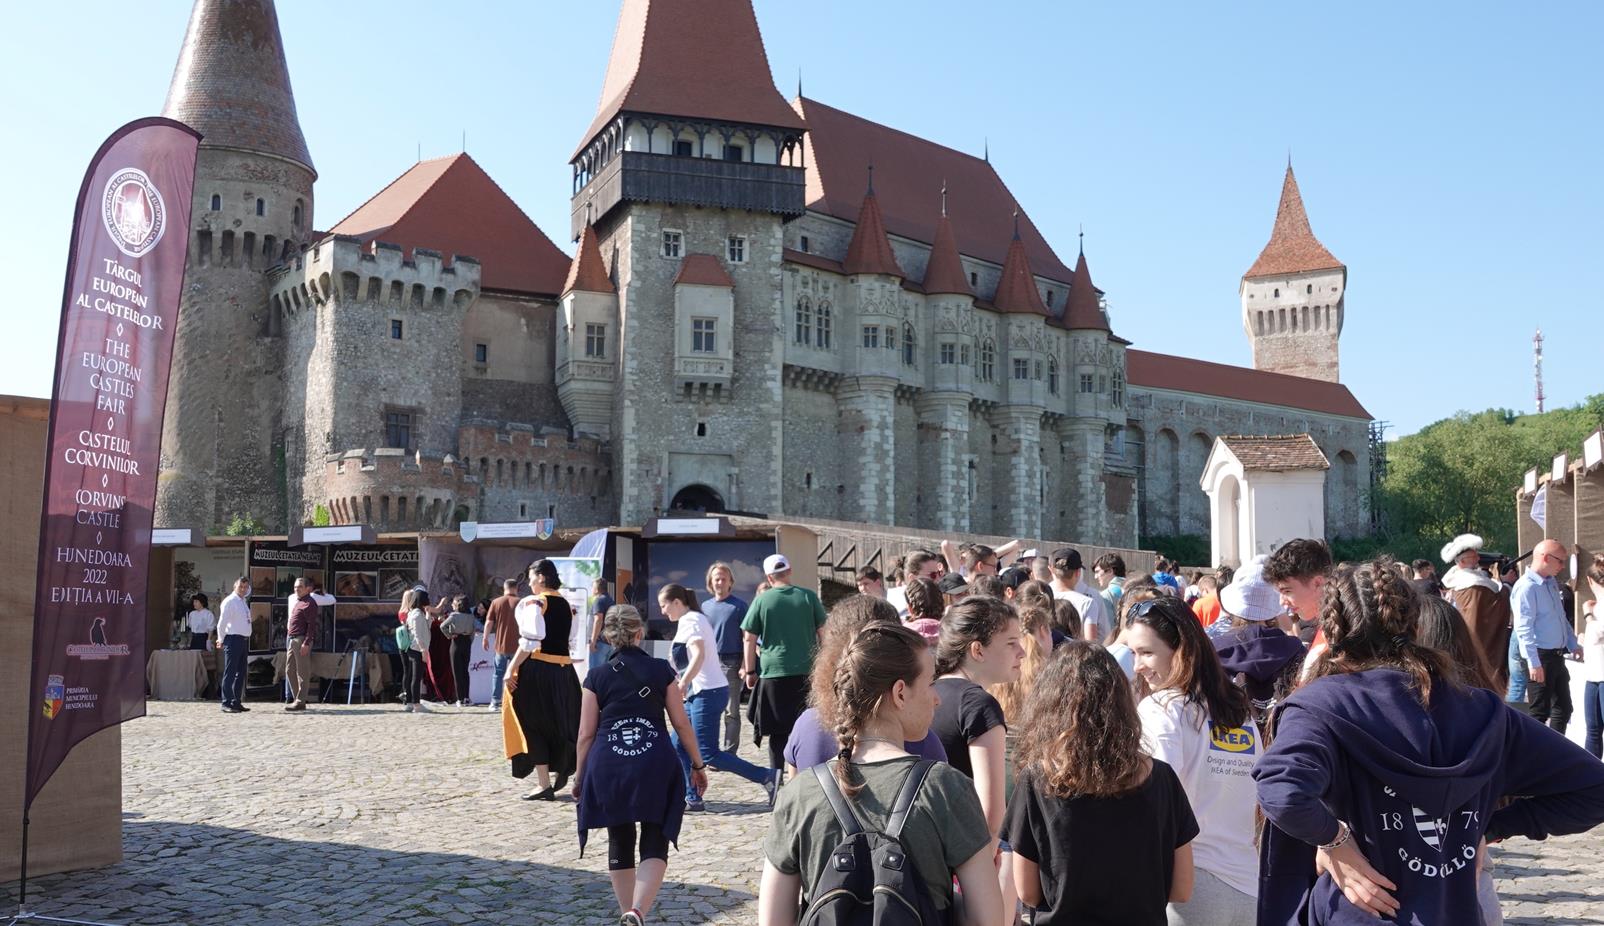 A început „Târgul European al Castelelor”. Obiective importante din România își prezintă oferta turistică, într-o atmosferă medievală, la Hunedoara